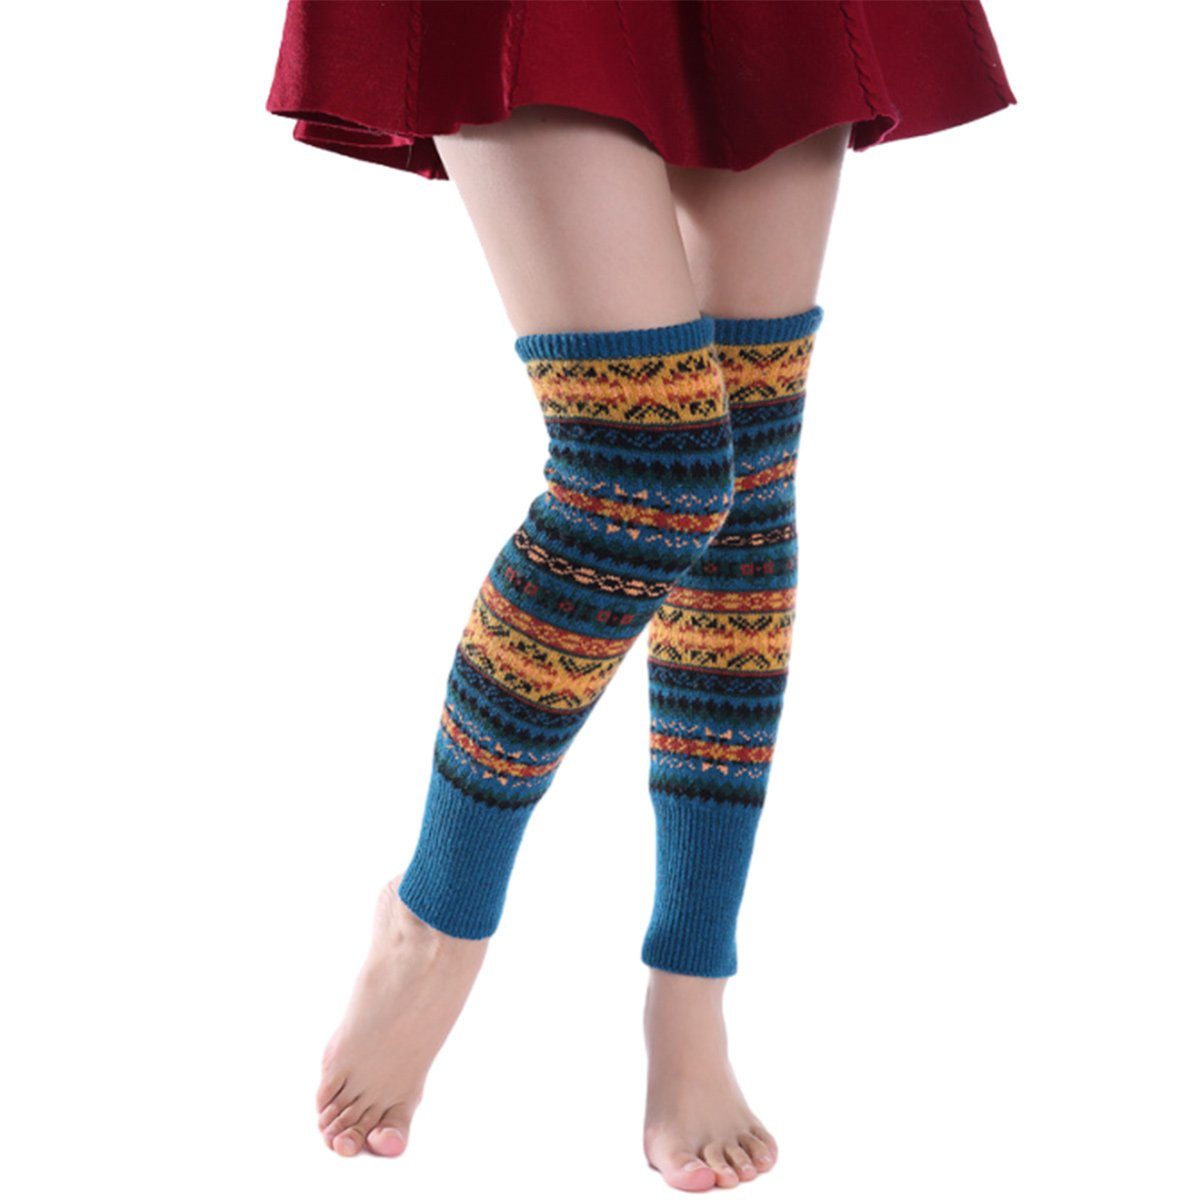 Jormftte Beinstulpen Damen Lange Winter Legwarmer Böhmischer Stil,Knit Socken,für Weihnacht Blau